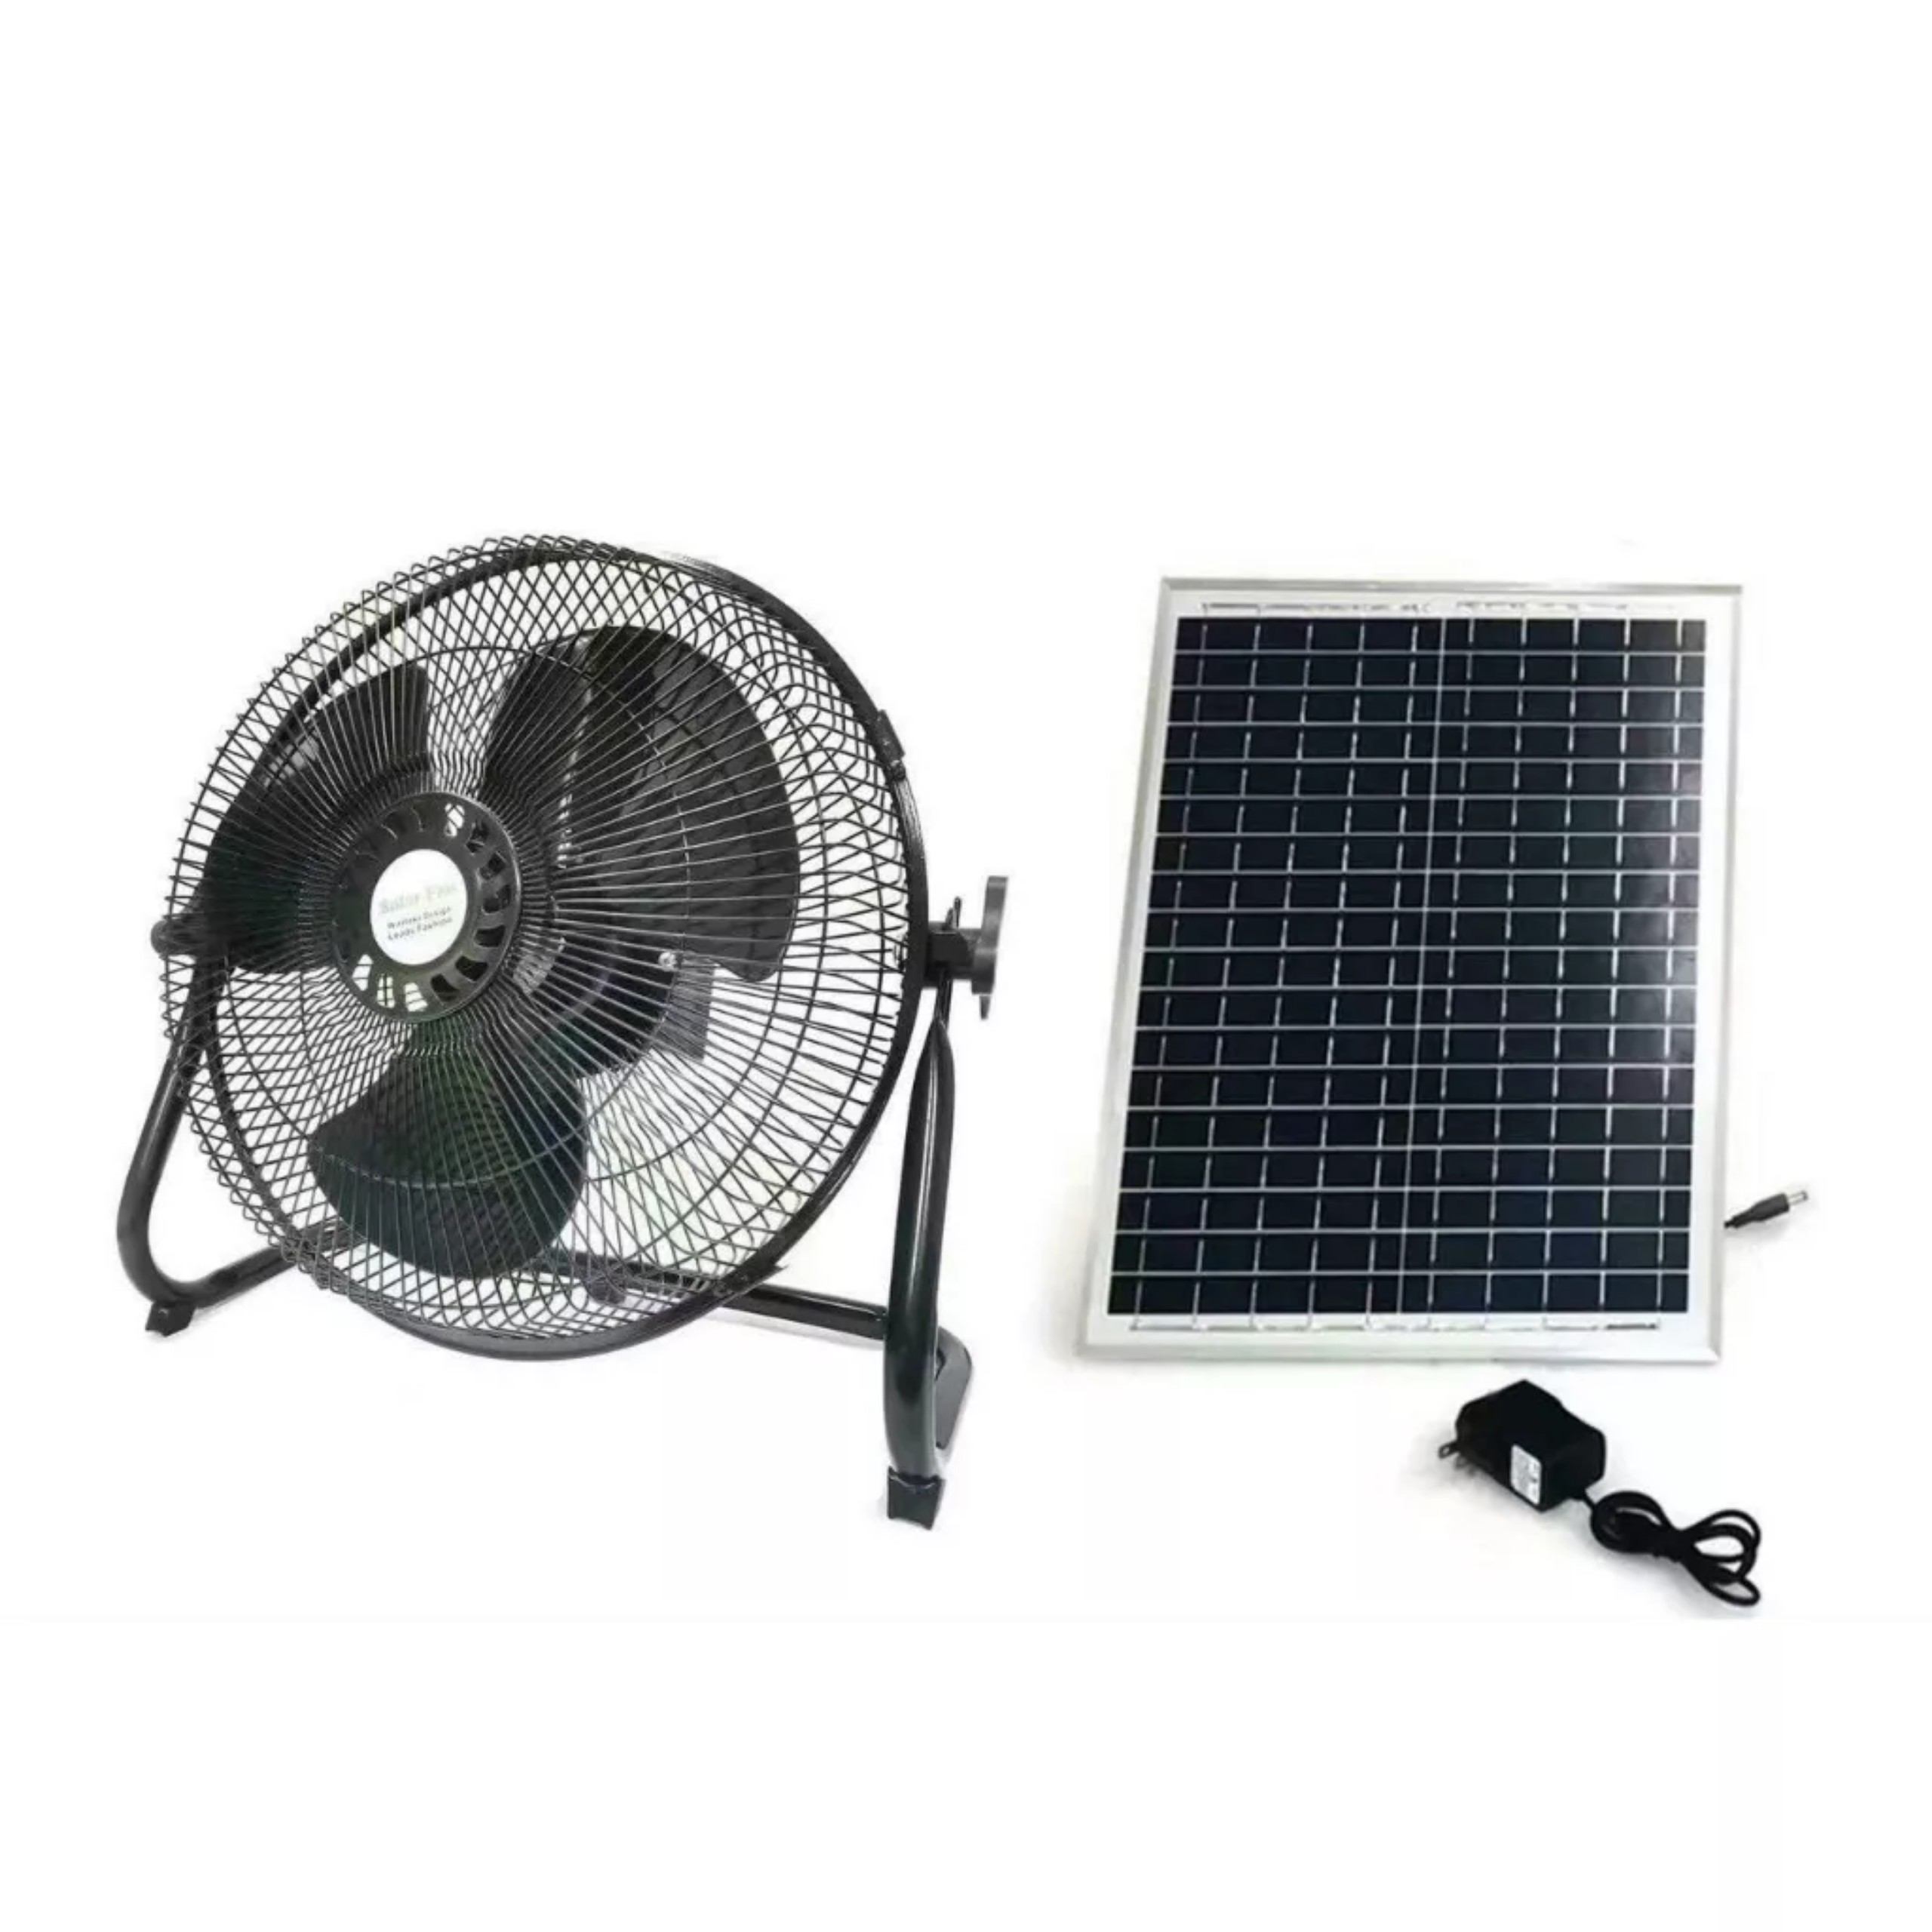 Quạt sạc tích điện năng lượng mặt trời Panano Solar Fans DY 009, thời gian sử dụng đến 12 tiếng.